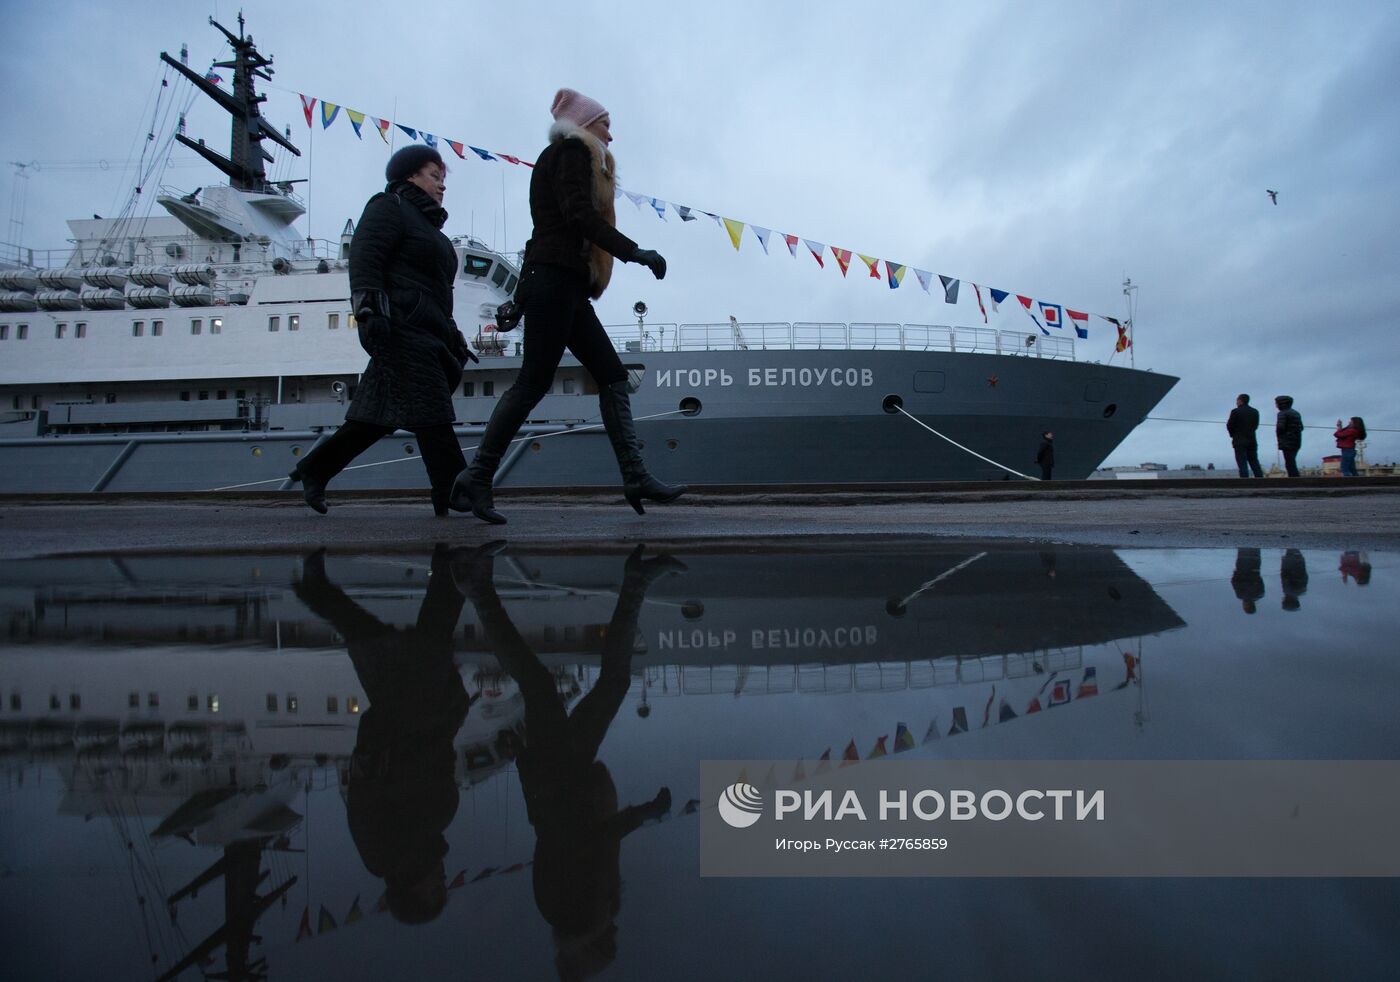 Церемония подъема флага на спасательном судне "Игорь Белоусов" в Санкт-Петербурге